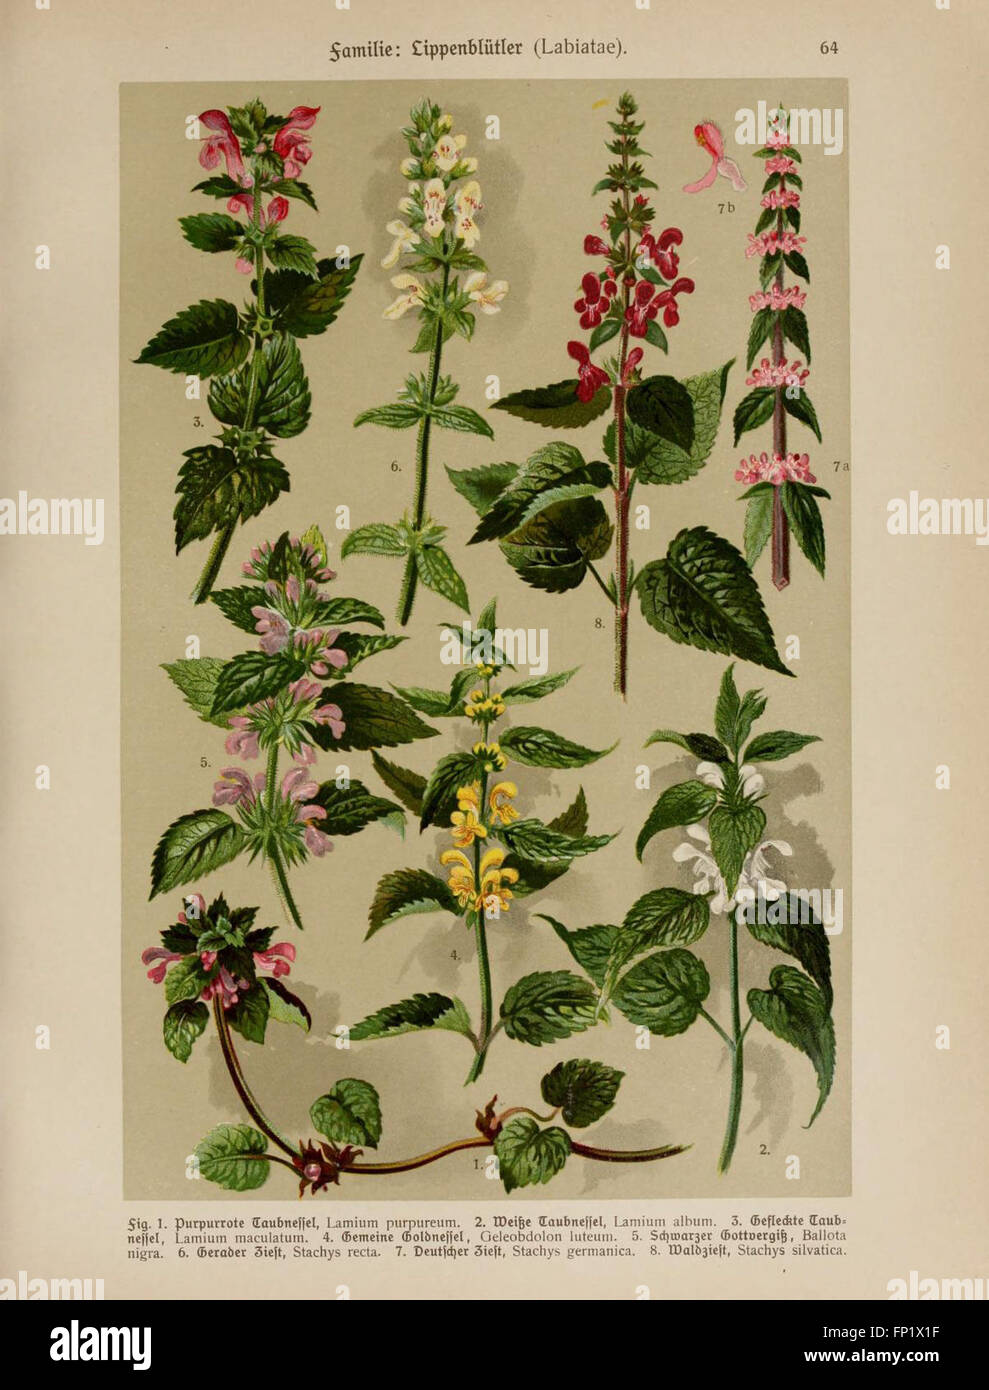 Hoffmann-Dennert botanischer Bilderatlas (Taf. 64) Stock Photo